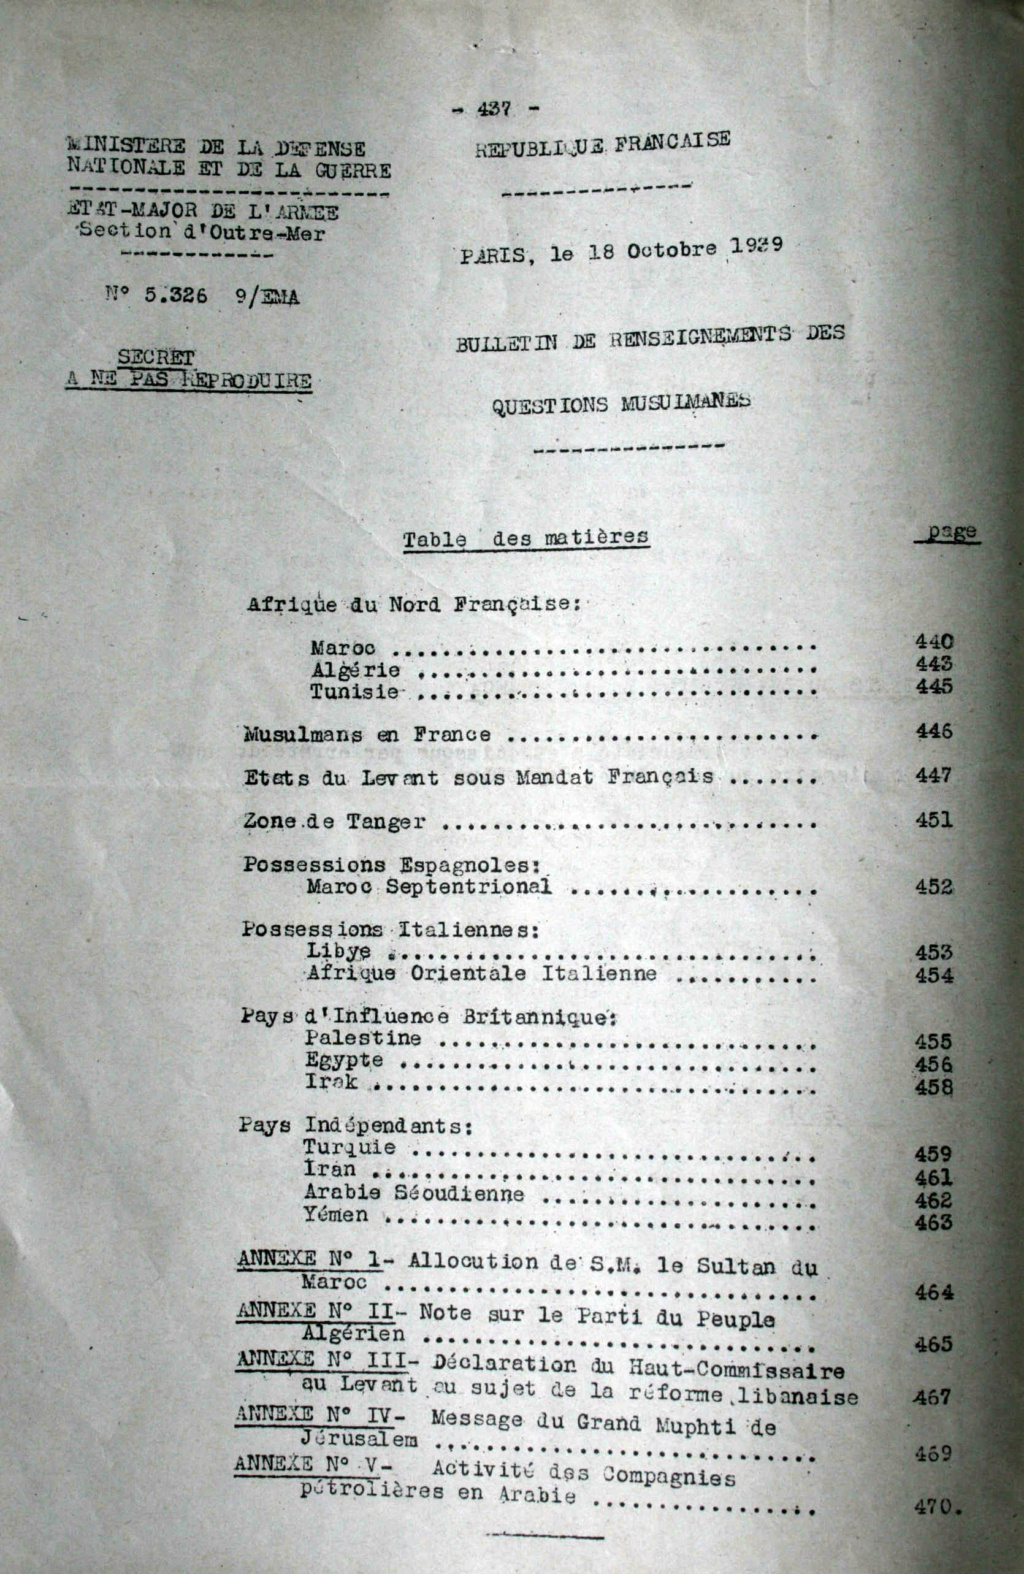 Bulletin de renseignements des questions musulmanes 18-10-1939 34_n_373